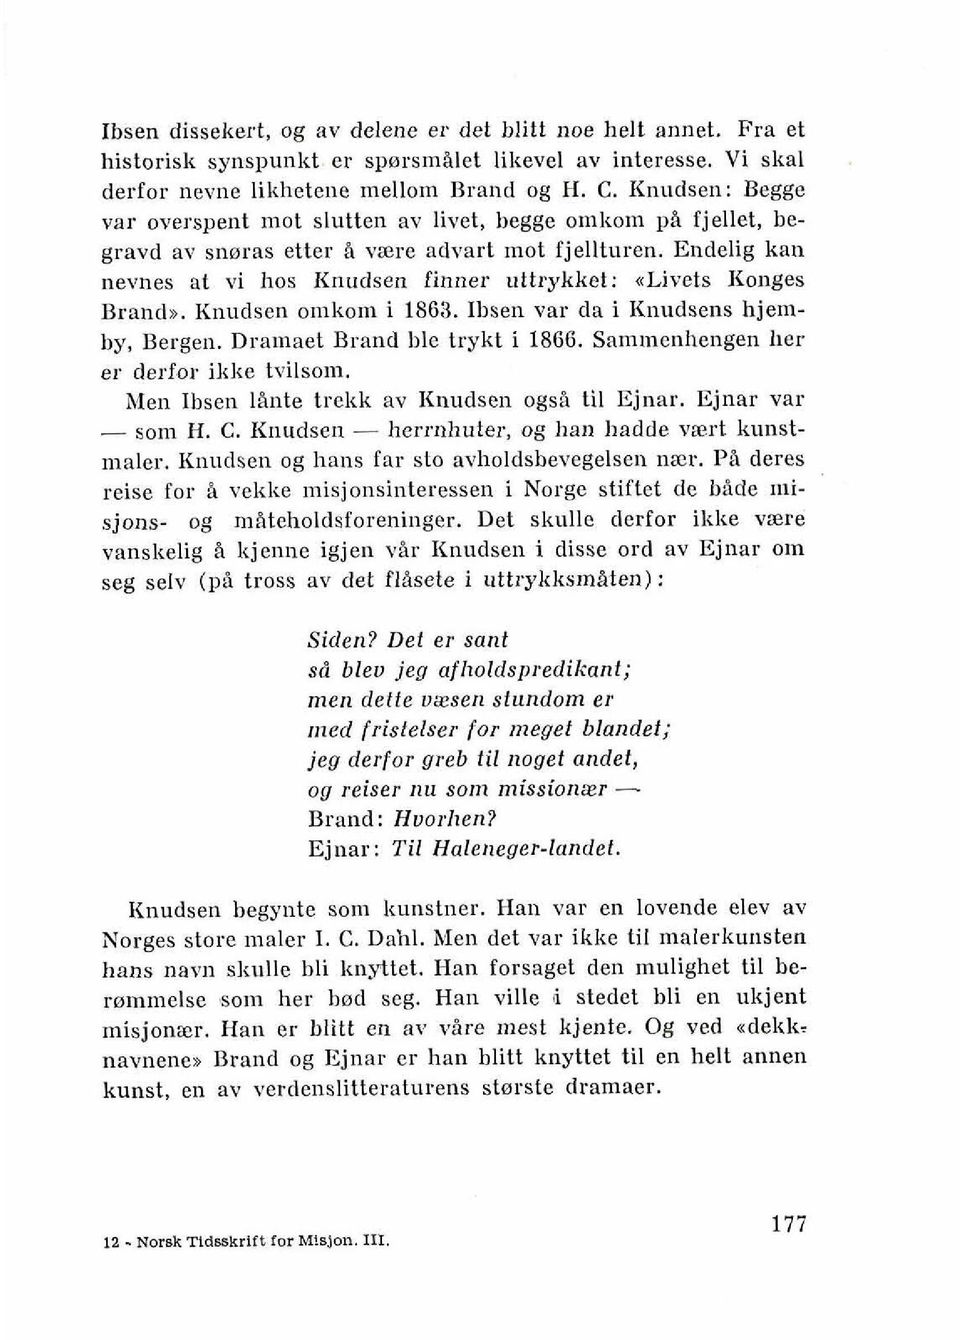 Endelig kan nevnes at vi hos Knudsen finner uttrykket: nlivets Konges Brands. Knudsen omkom i 1863. Ibsen var da i Knudsens hjemby, Bergen. Dramaet Brand ble trykt i 1866.